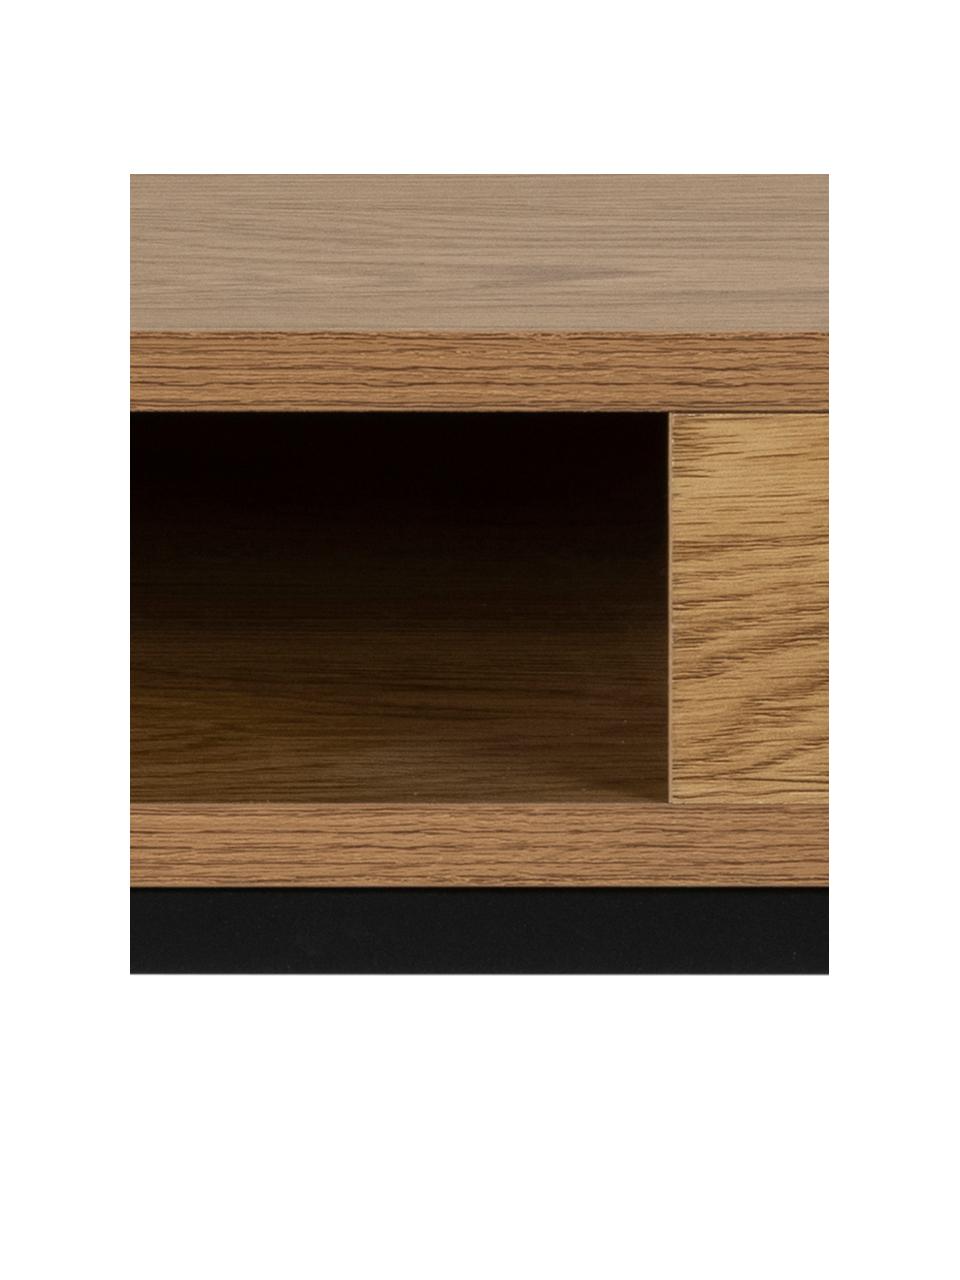 Holz-Couchtisch Willford, Tischplatte: Mitteldichte Holzfaserpla, Gestell: Metall, pulverbeschichtet, Holz, B 80 x T 80 cm